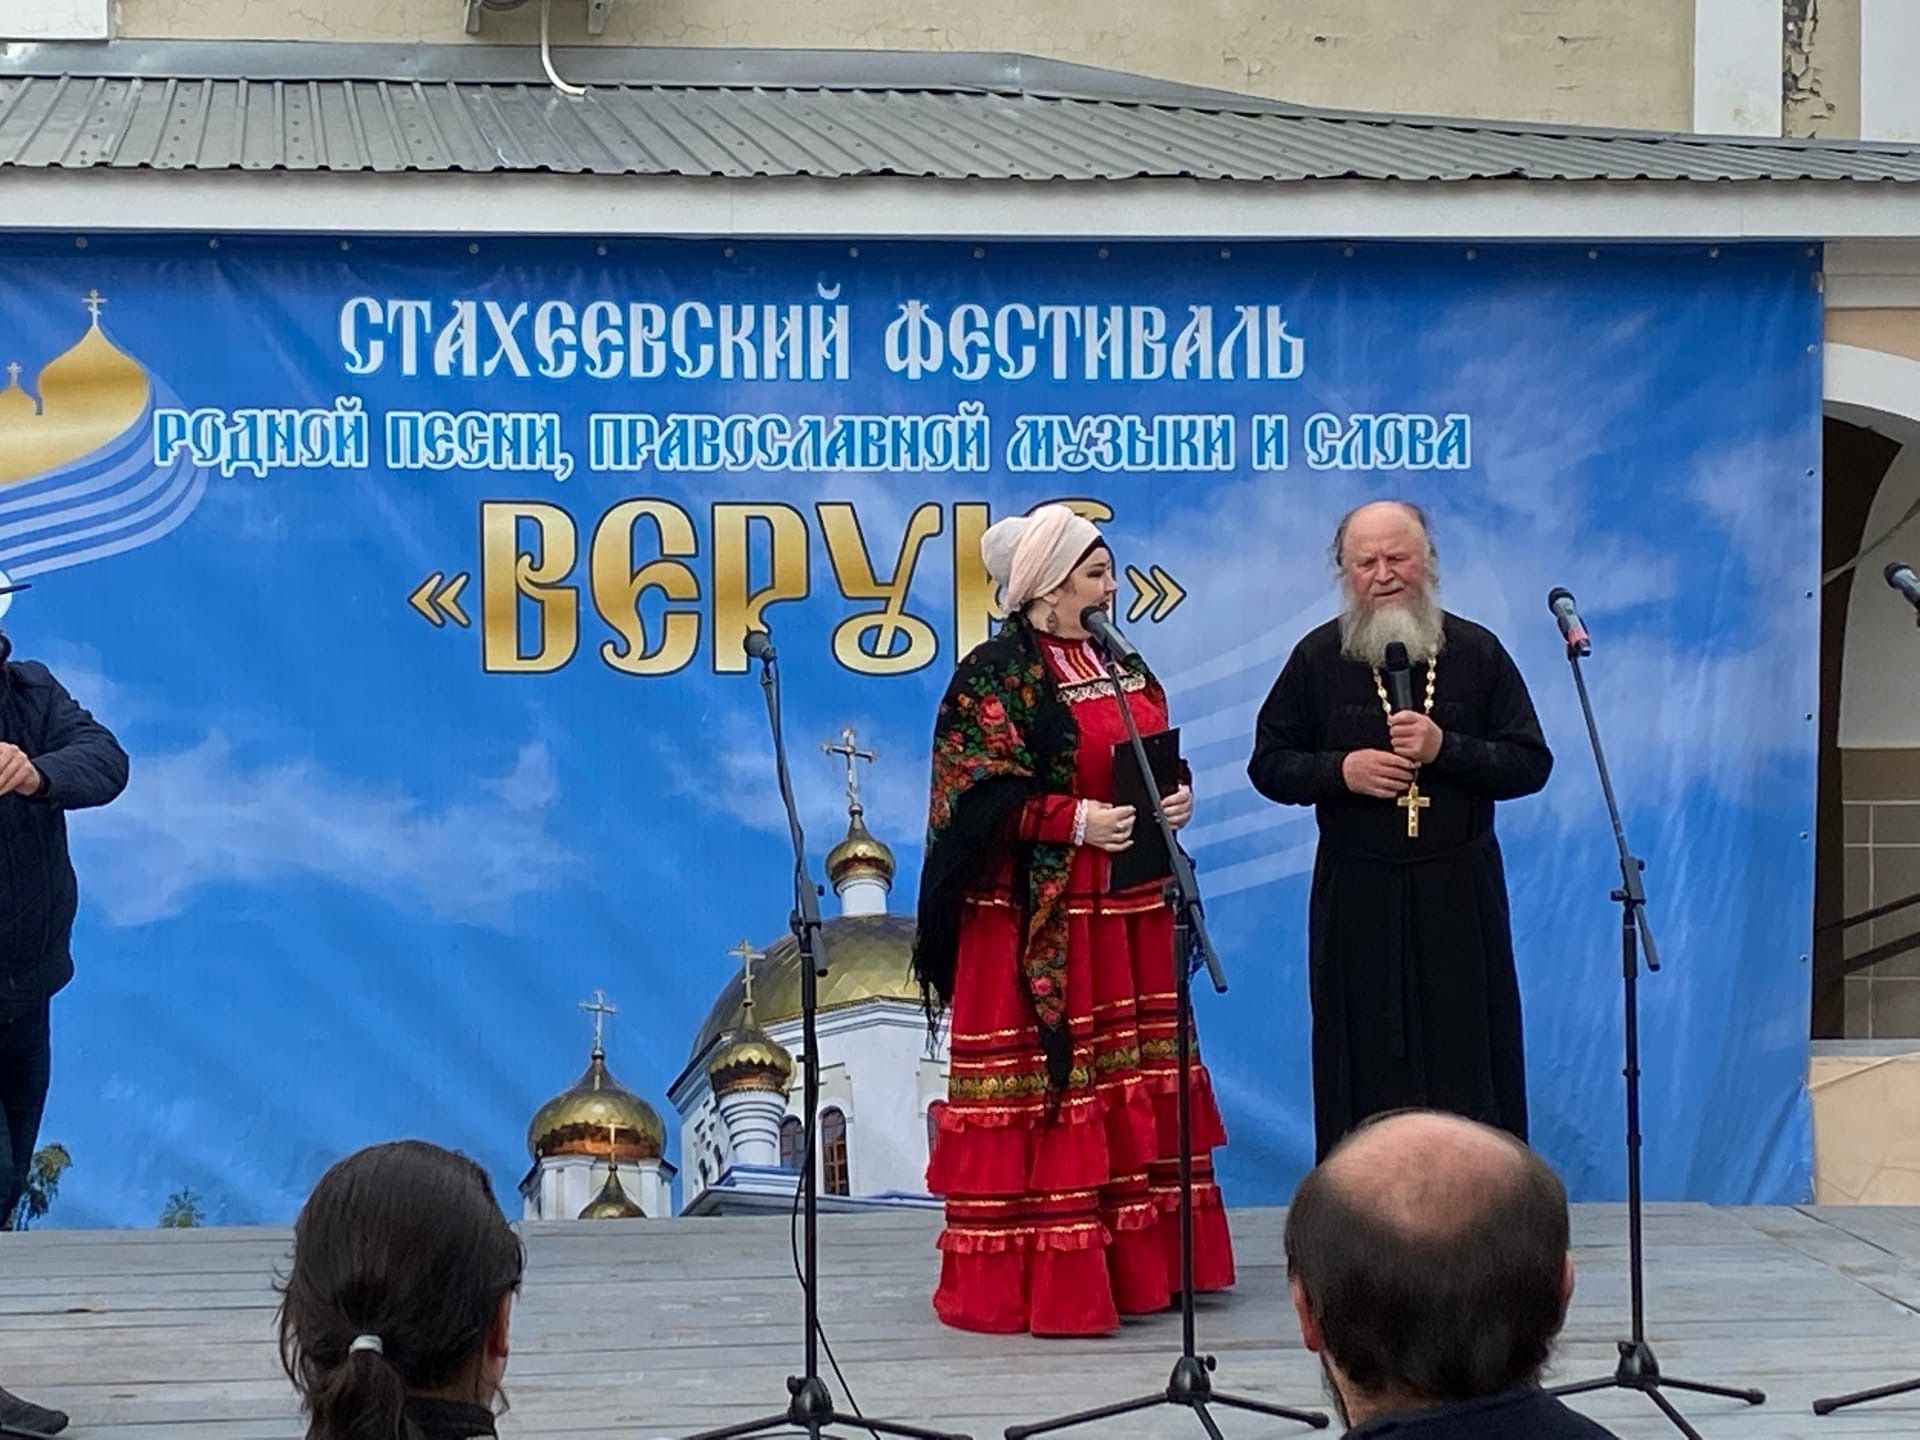 Кряшенская песнь прозвучала на V Межрегиональном фестивале «Верую» (фото и видео)